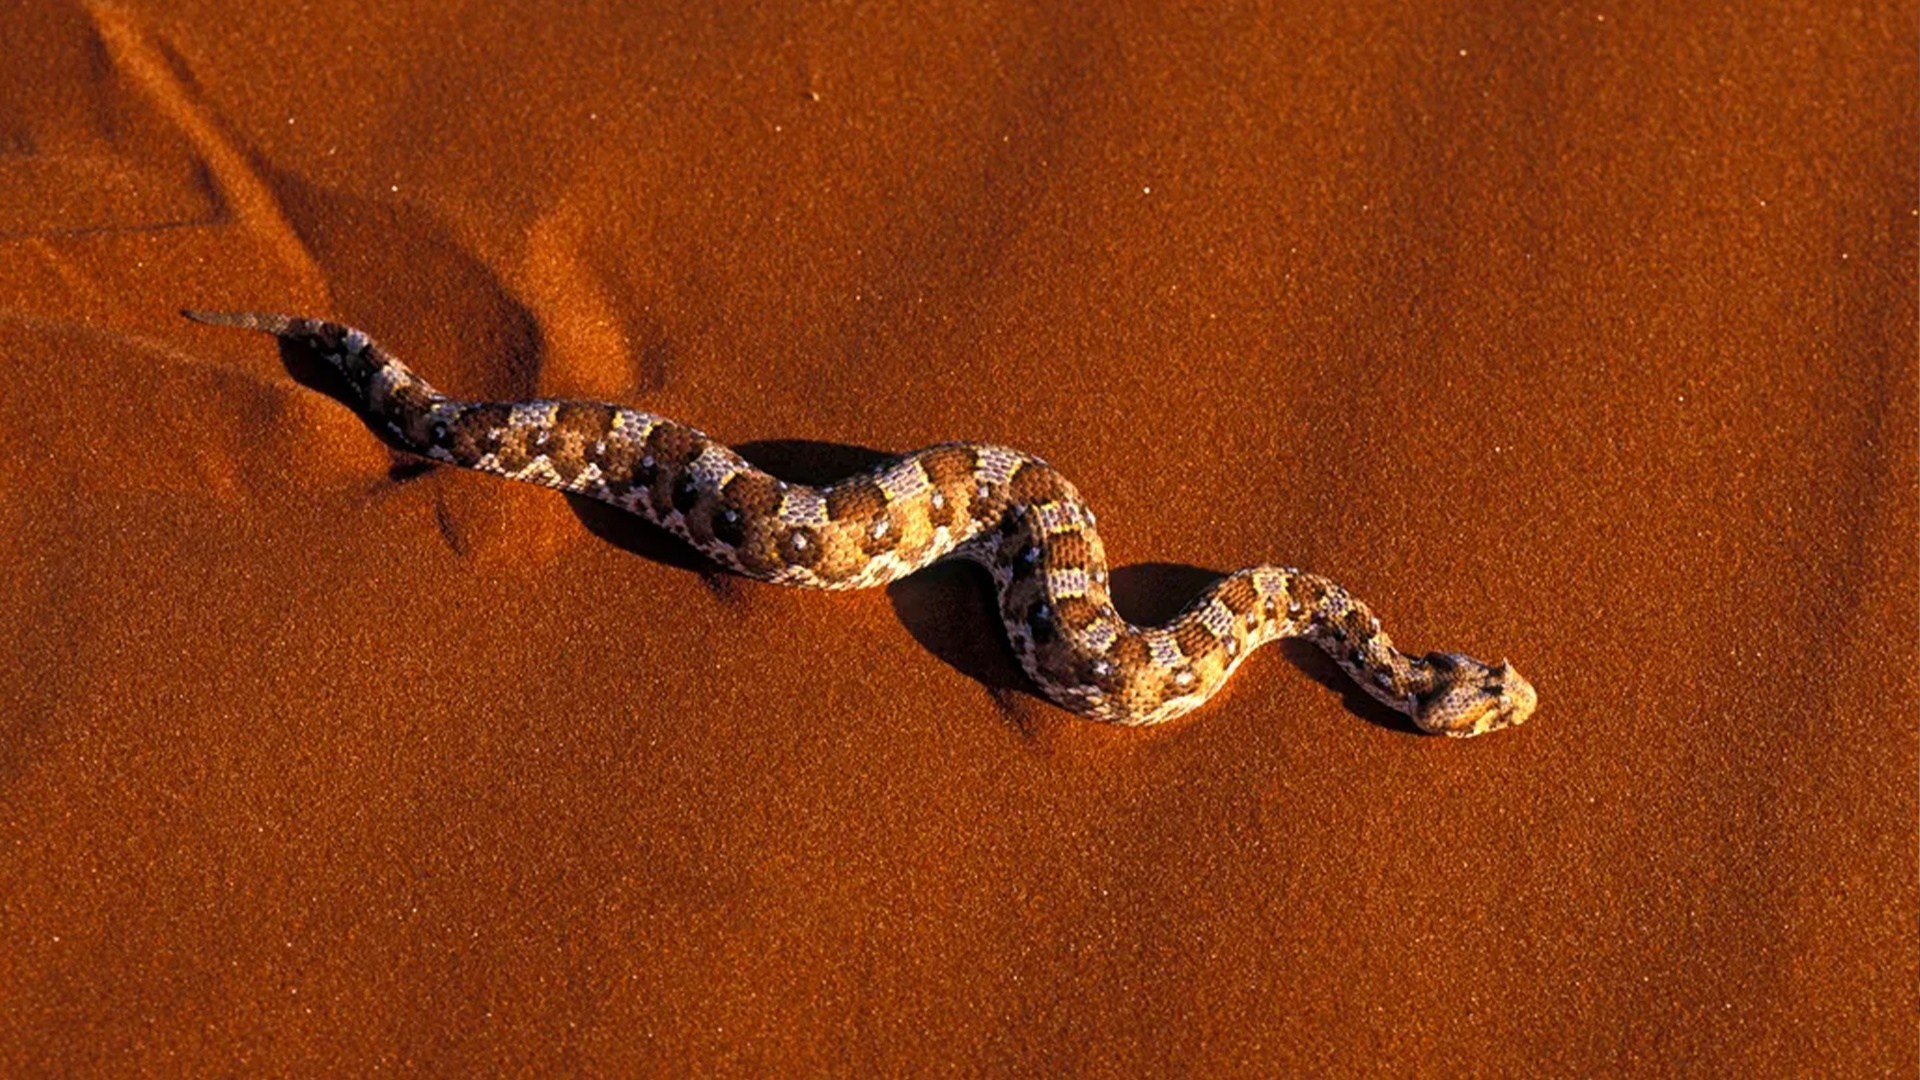 (Maravilloso de reconocer: El retorcimiento de la serpiente. (Imagen: BBC))